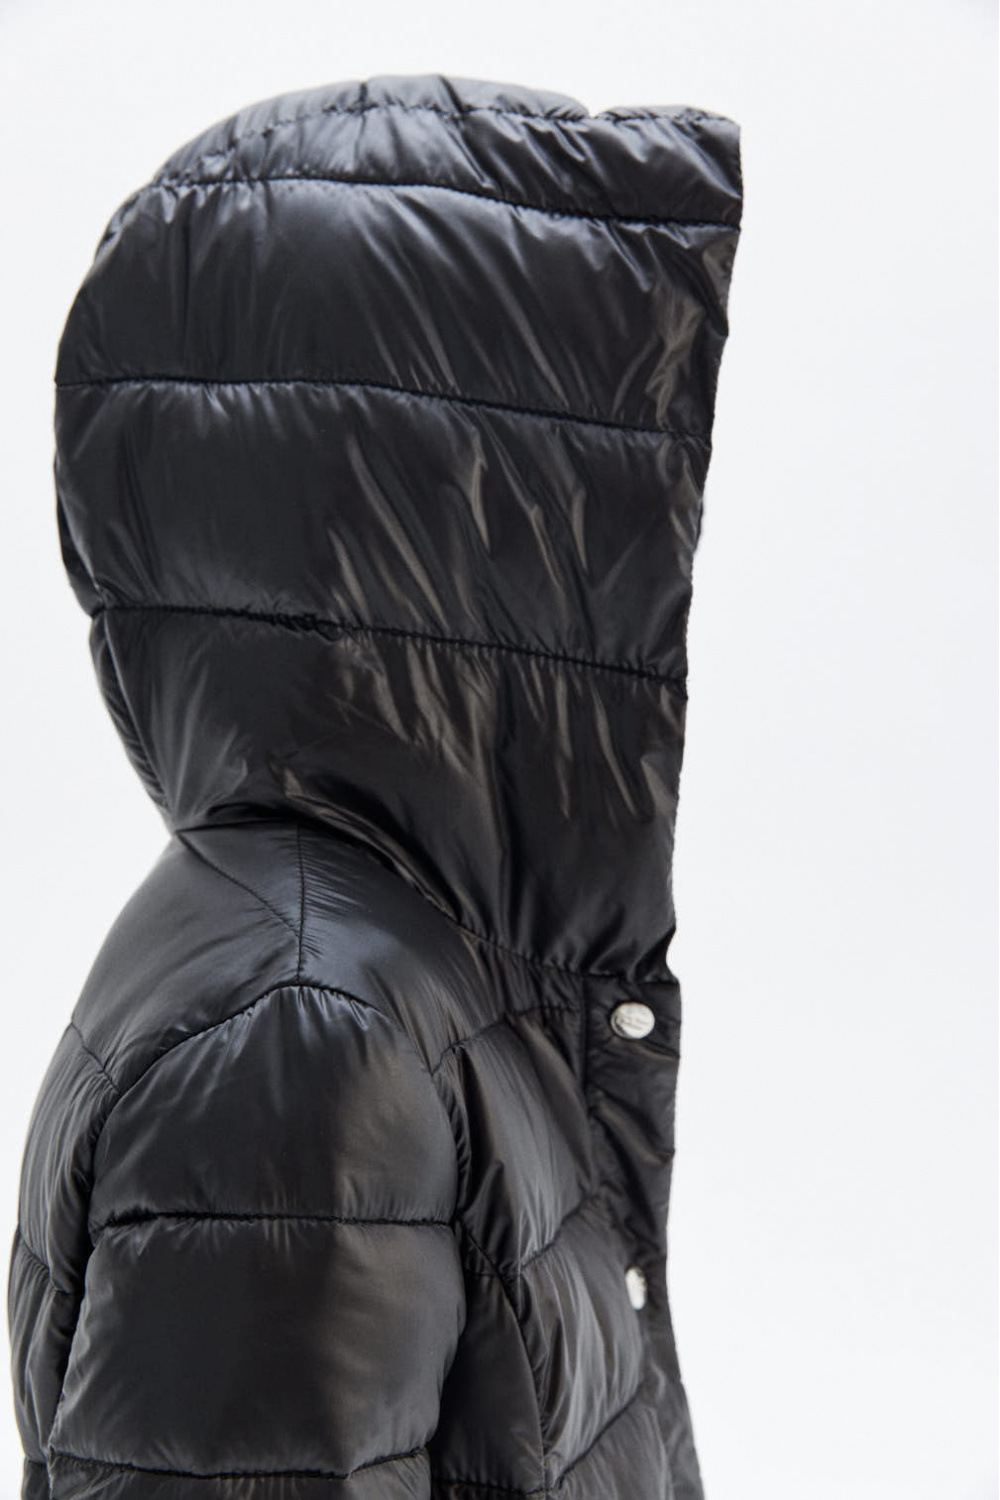 Стеганое пальто ниже колена с контрастной подкладкой (SSFSG-026-20307-101) Silver spoon